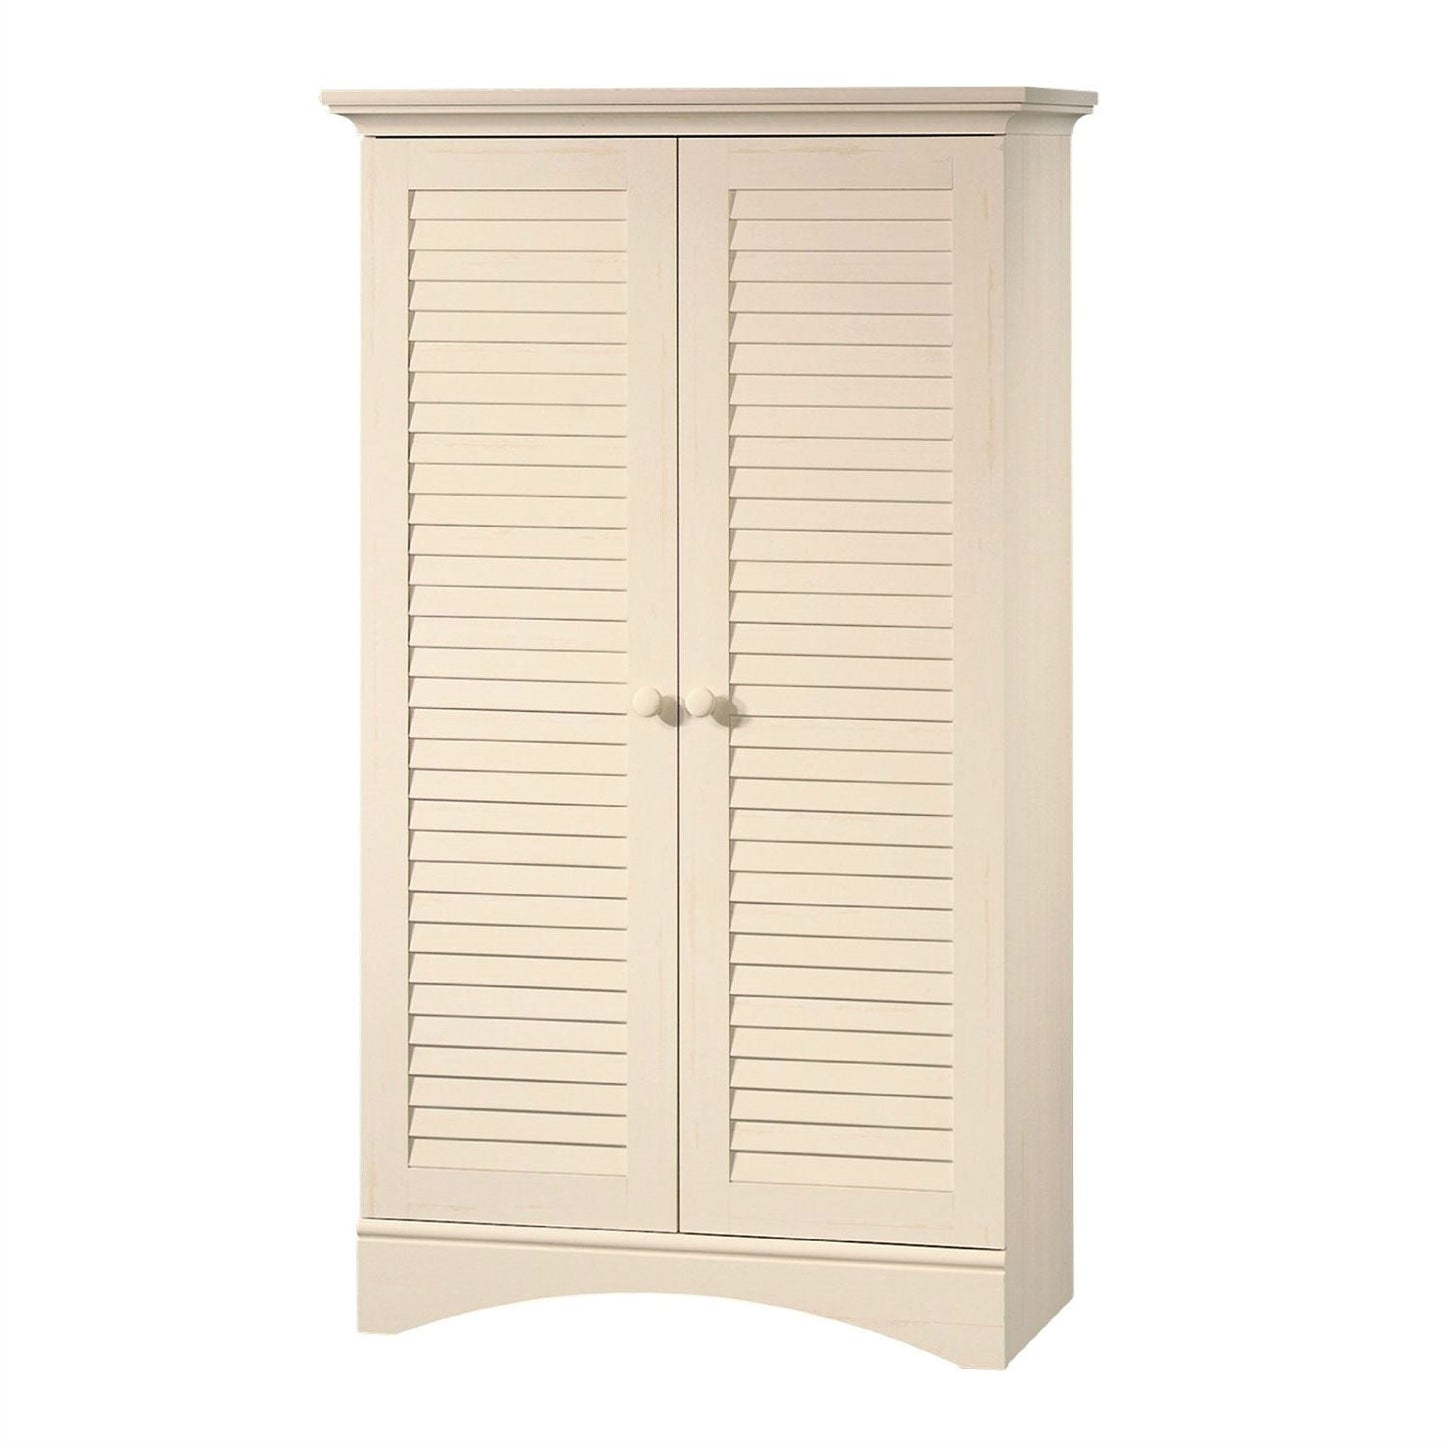 Bedroom > Wardrobe & Armoire - Louver 2-Door Storage Cabinet Bed Bath Armoire Wardrobe In Antique White